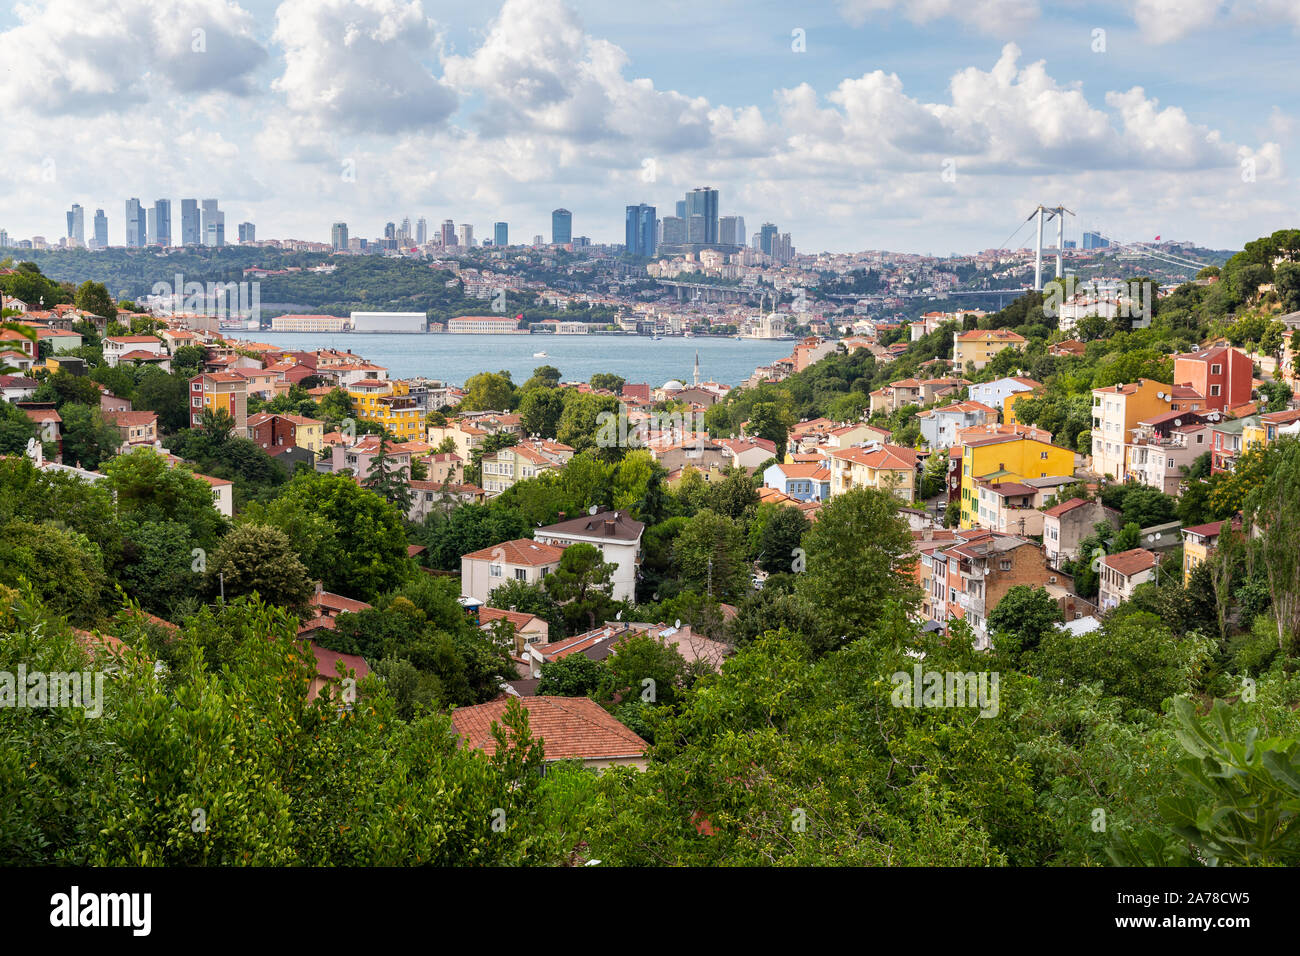 Hohen winkel Blick auf den Bosporus von Kuzguncuk. Kuzguncuk ist ein Stadtteil im Uskudar Stadtteil auf der asiatischen Seite des Bosporus in Istanbul, Türkei. Stockfoto